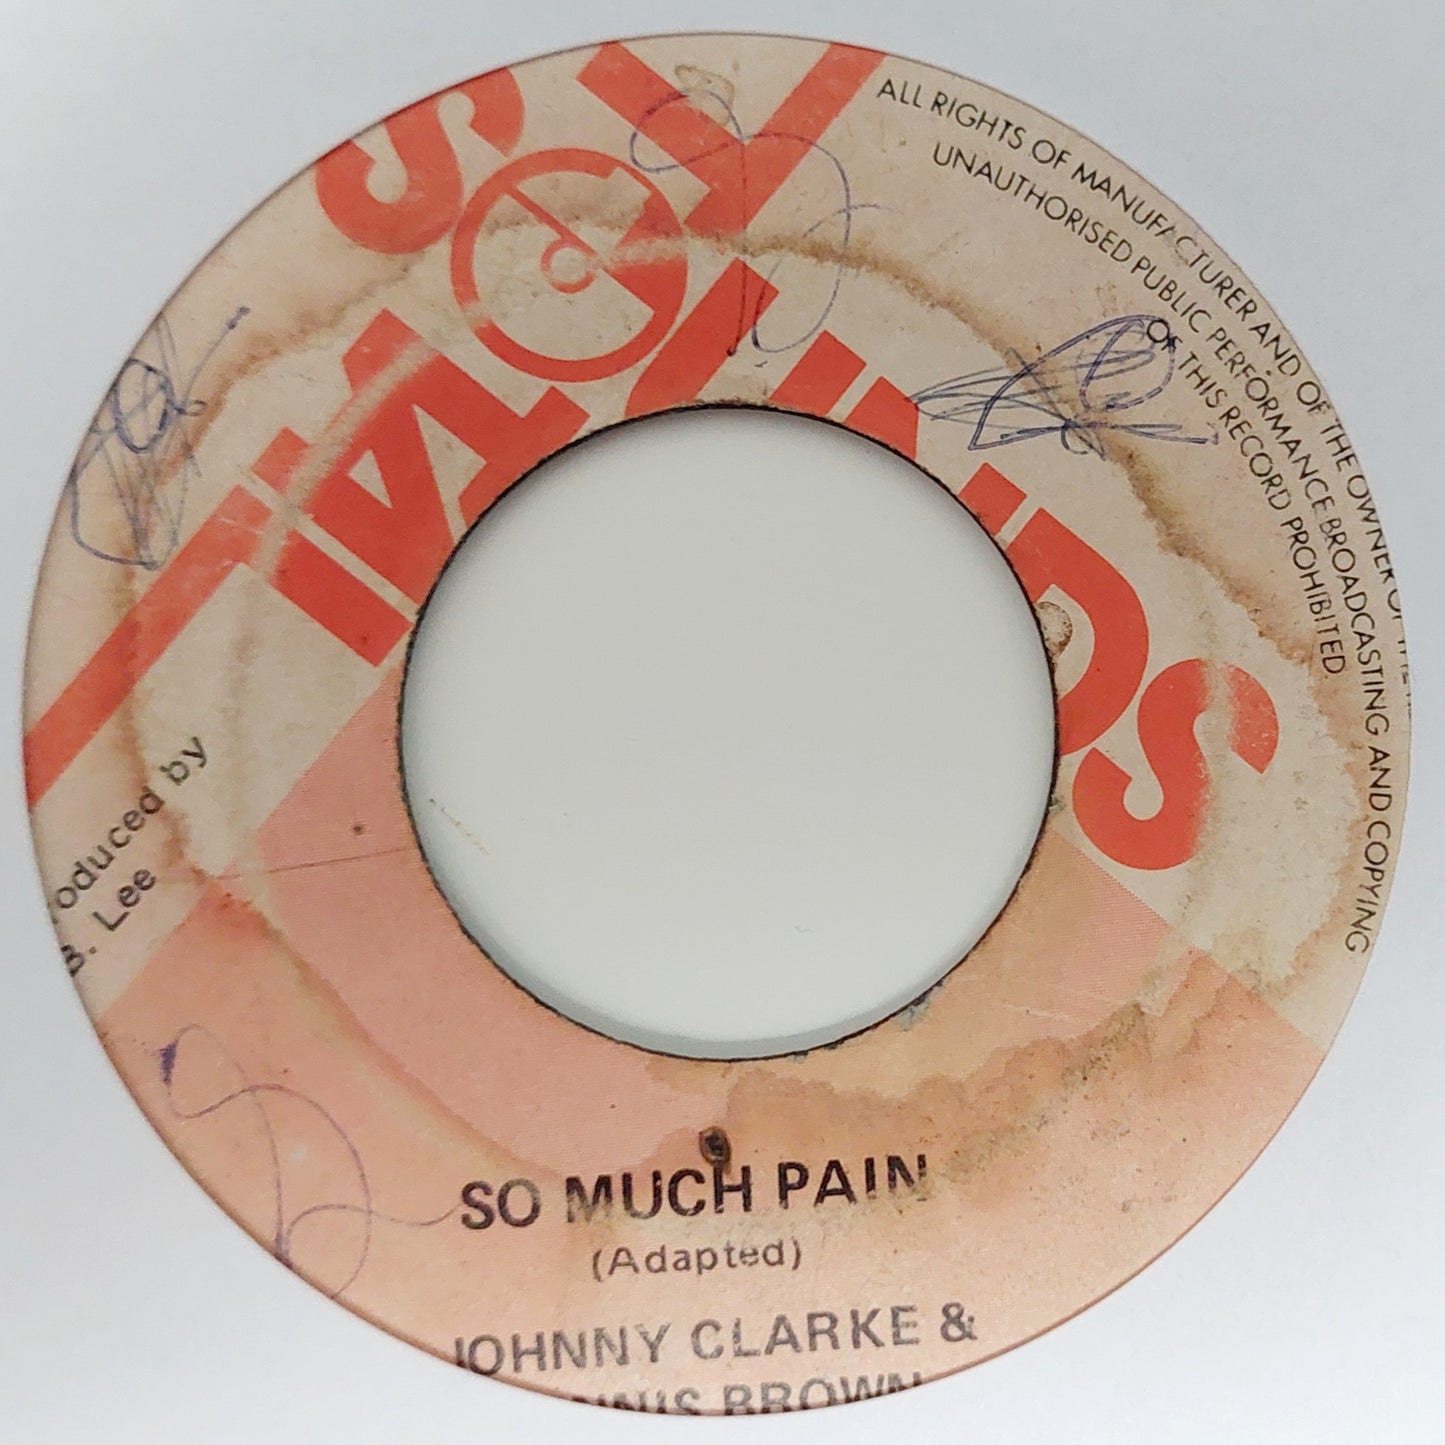 Johnny Clarke & Dennis Brown - So Much Pain